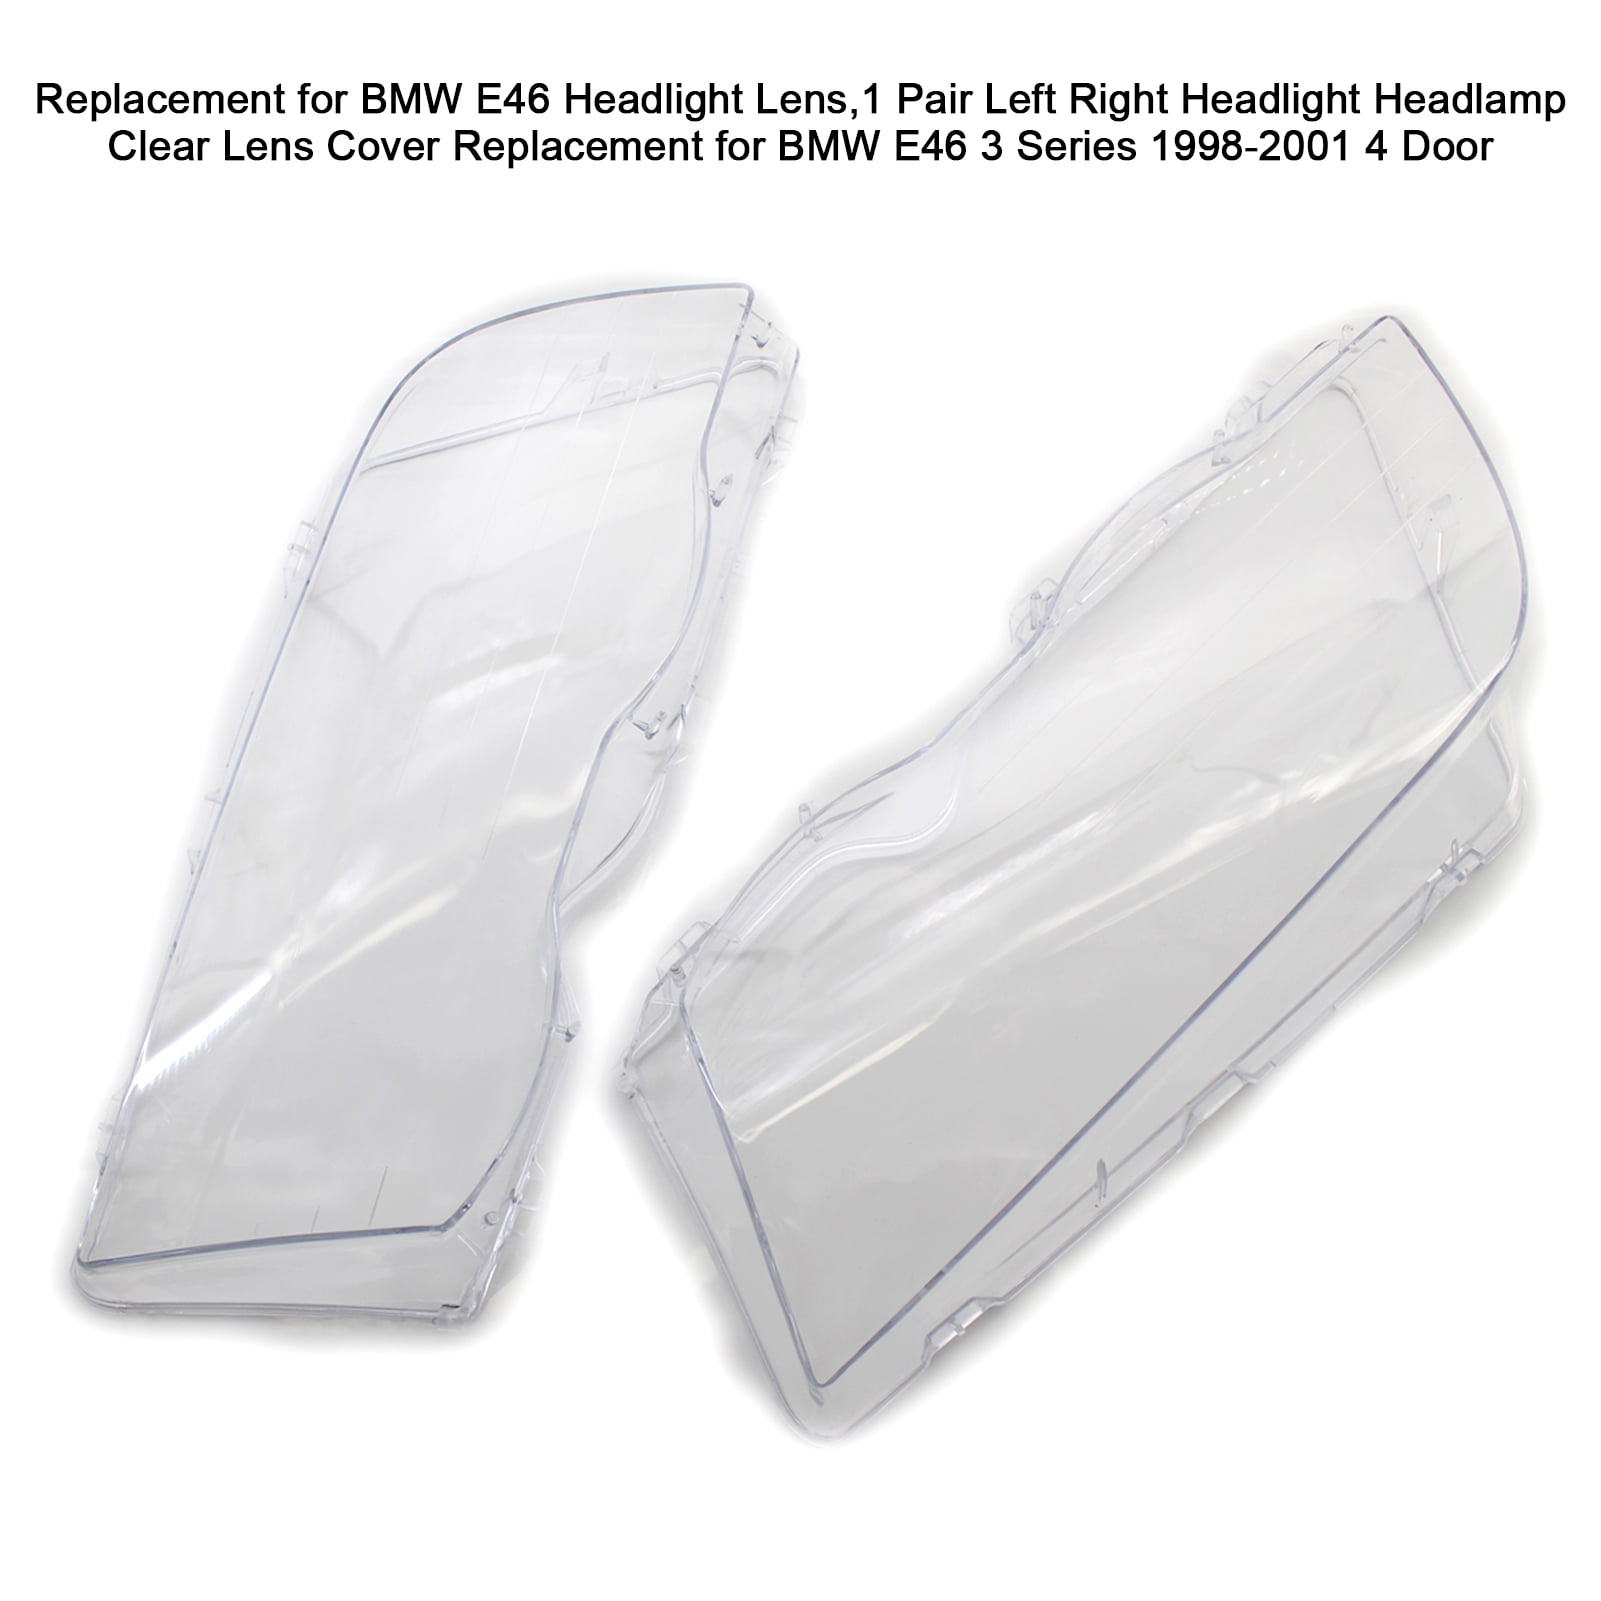 Estink Headlight Lens Cover,1 Pair Left and Right Car Headlight Headlamp Clear Lens Cover for BMW E46 320i 325i 325xi 330i 330xi 4 Door 1998-2001 